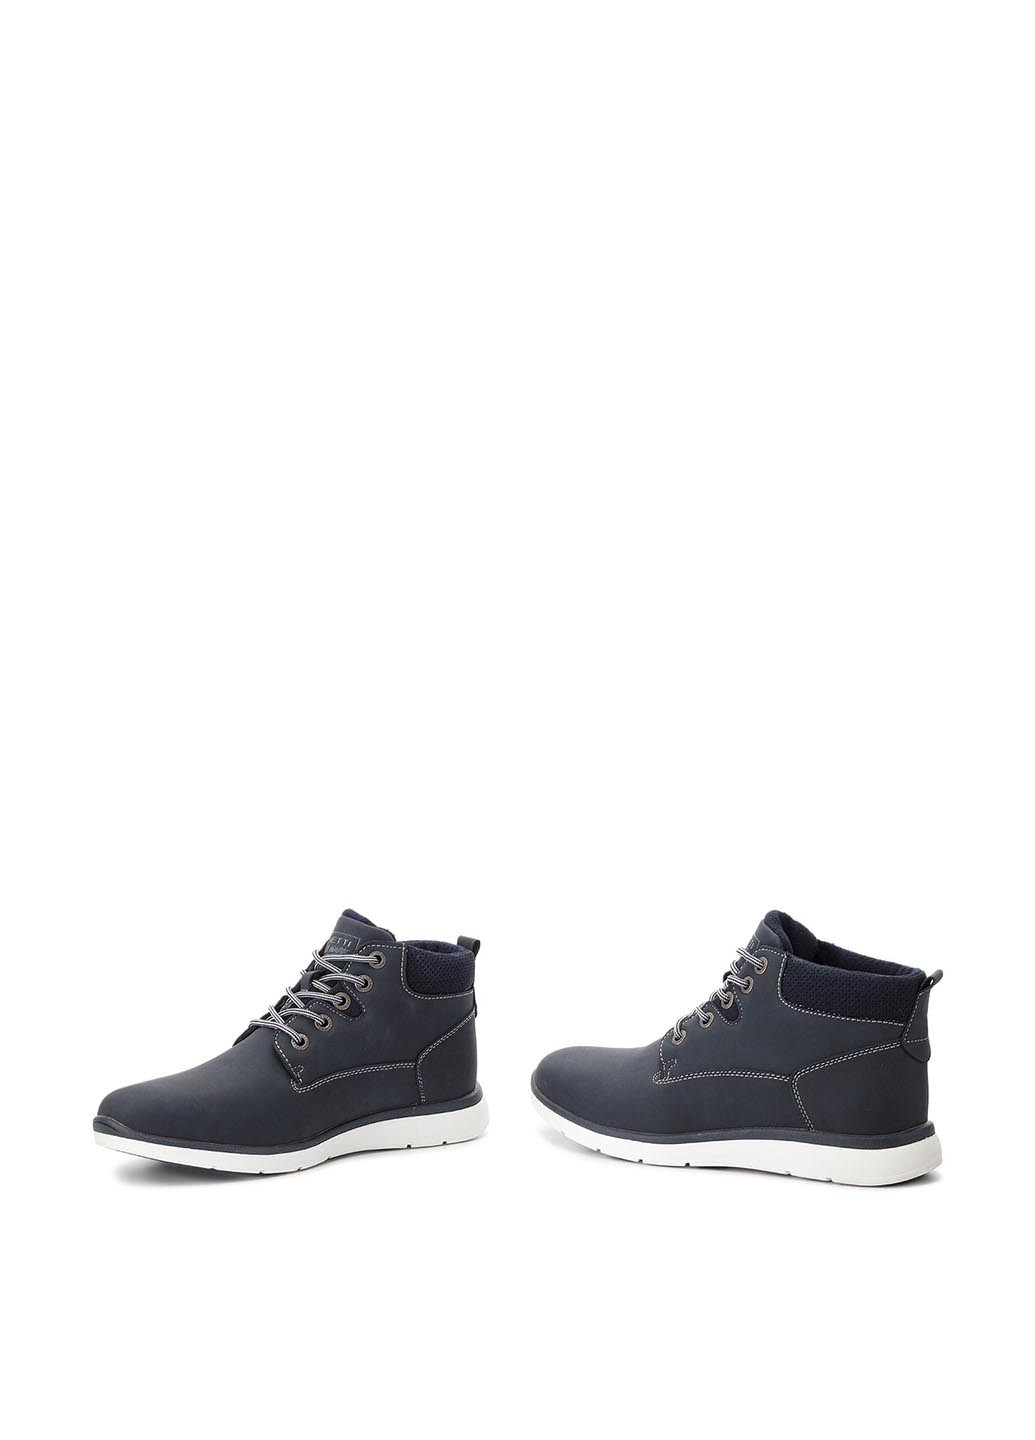 Темно-синие осенние черевики mp07-171006-01 Lanetti